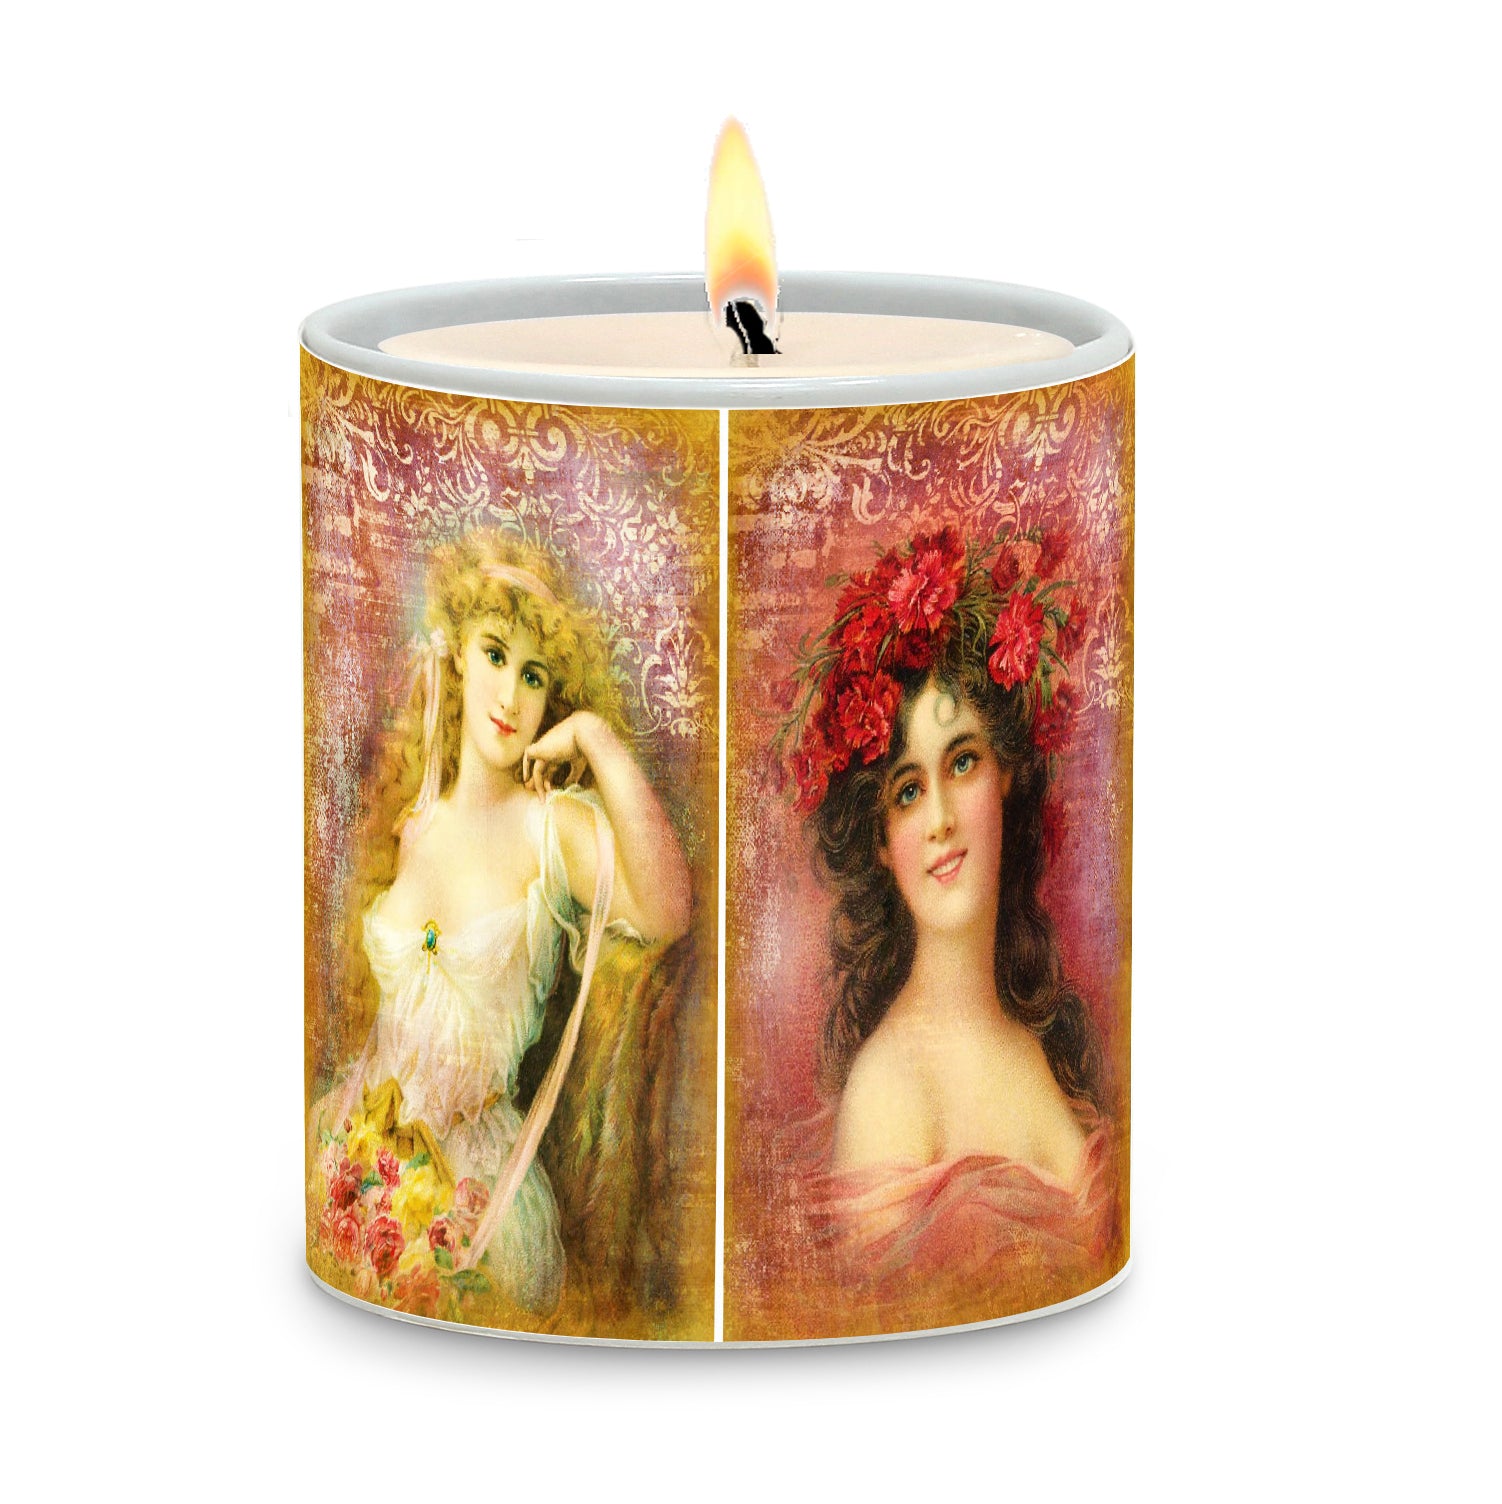 SUBLIMART: Damas - Porcelain Soy Wax Candle (Design #DMS02)